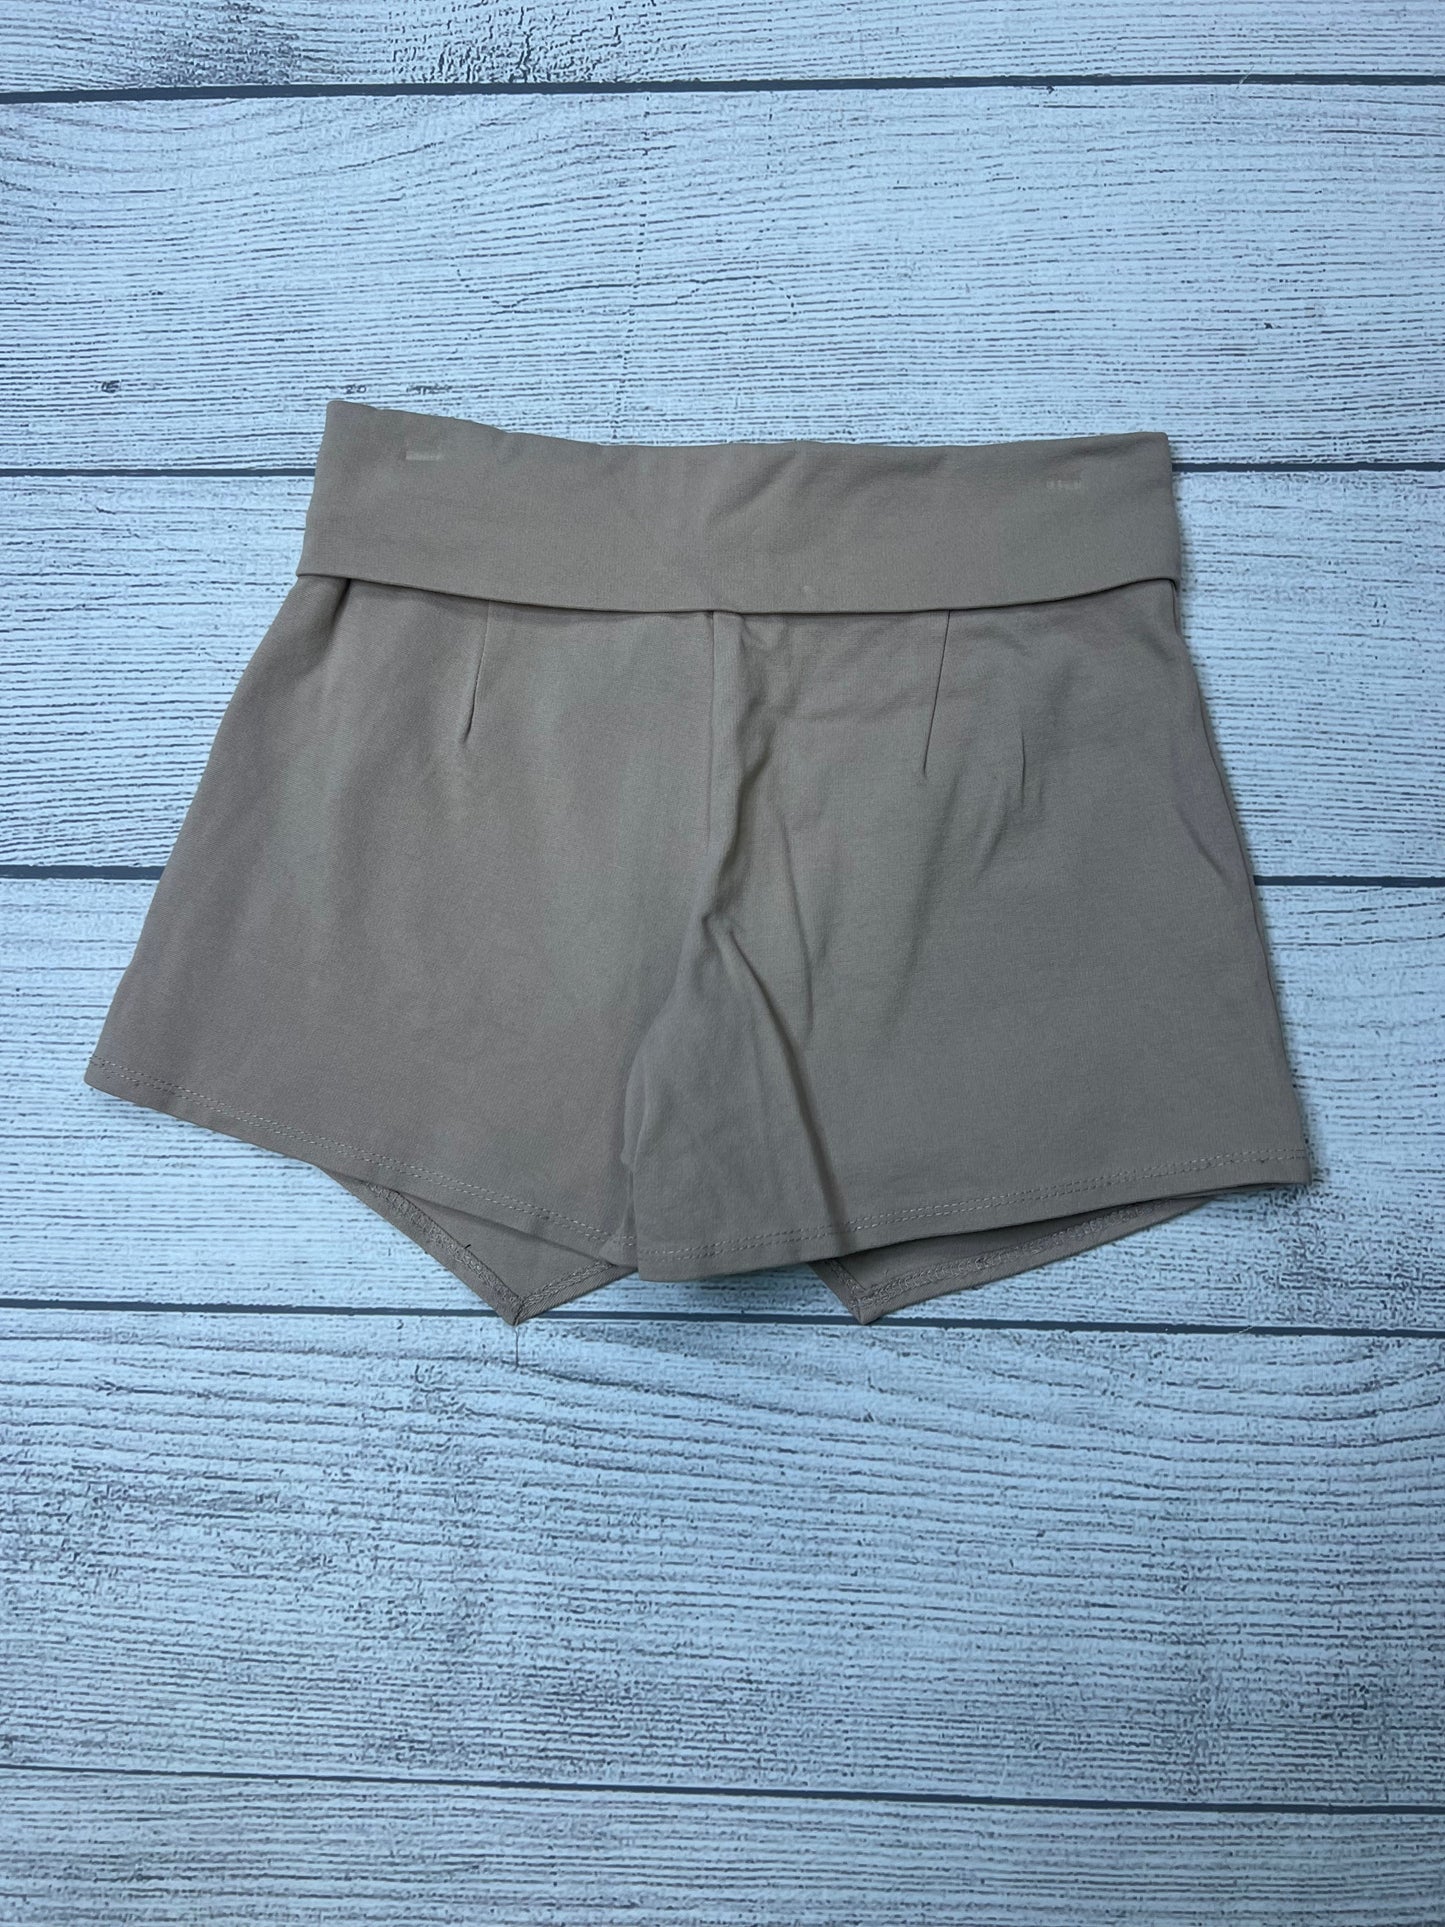 Shorts By Leyvas  Size: M